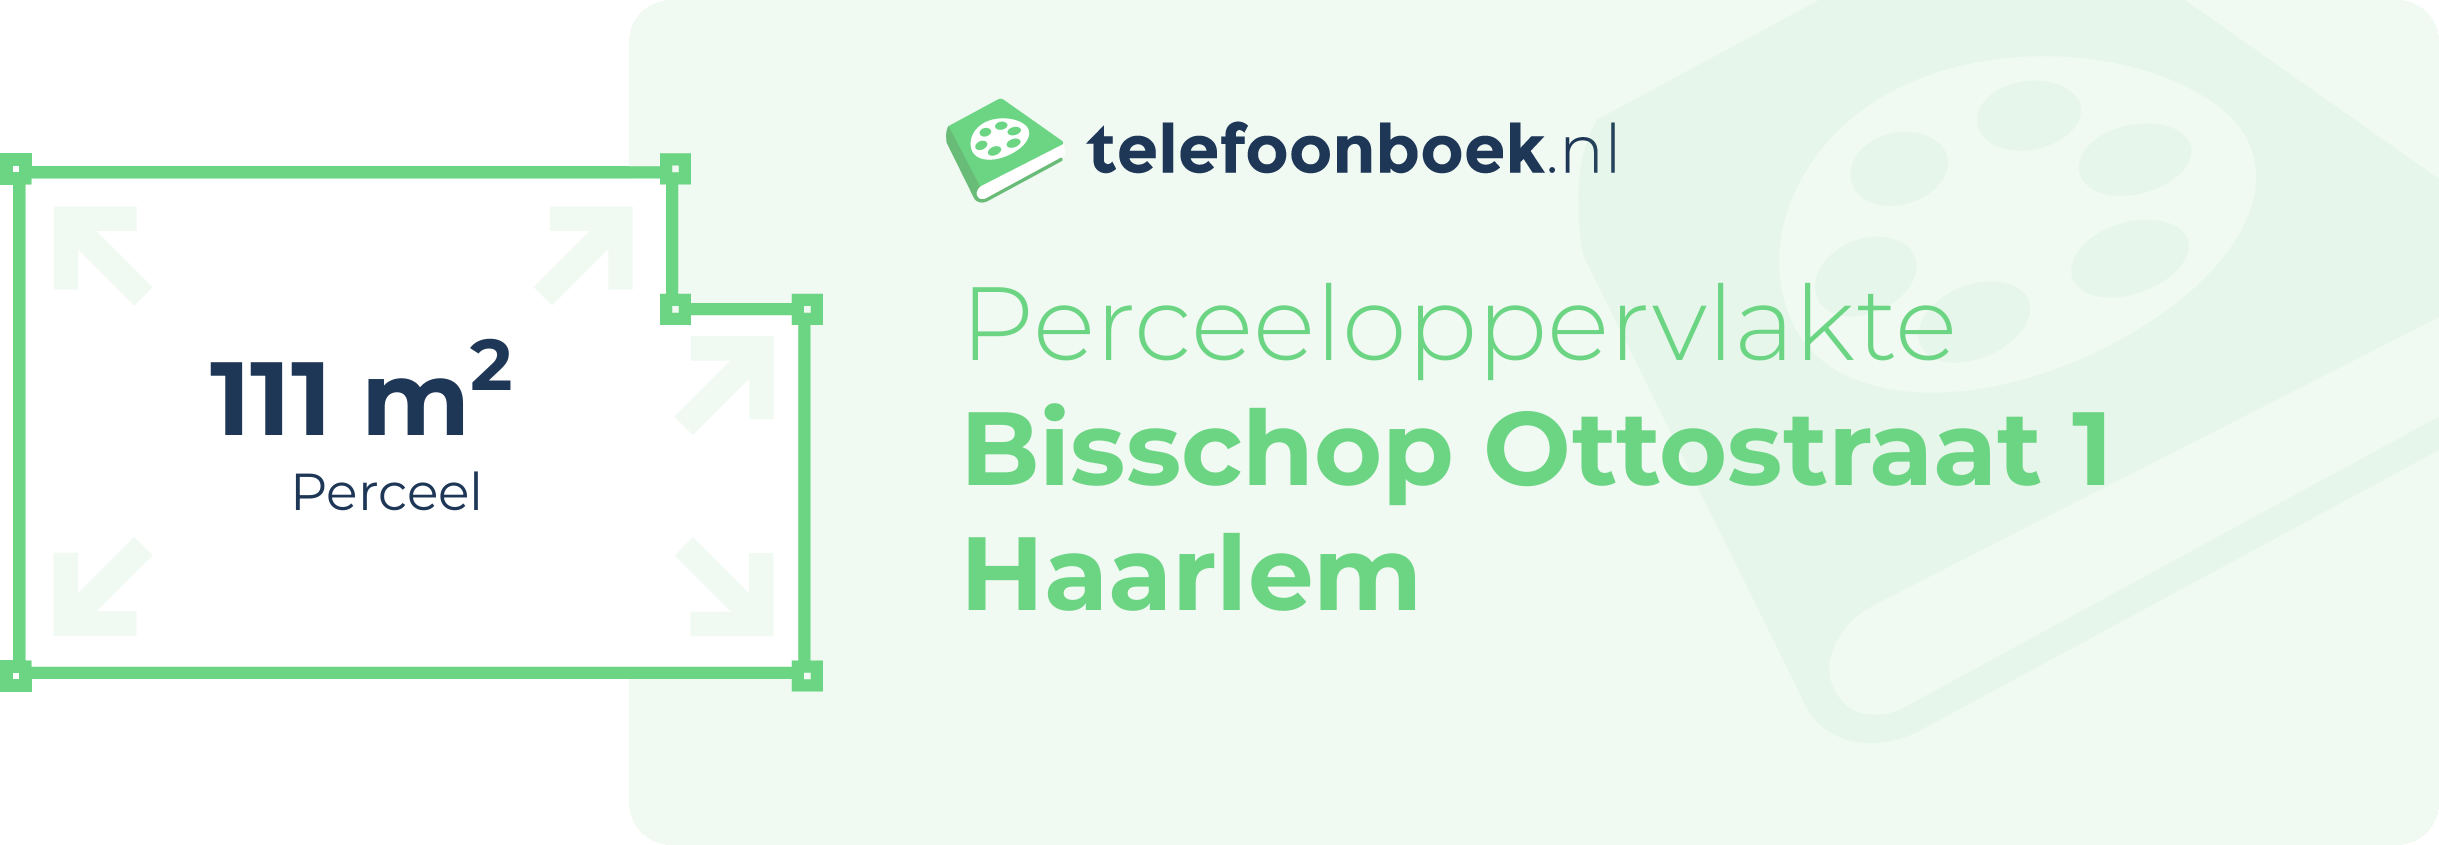 Perceeloppervlakte Bisschop Ottostraat 1 Haarlem